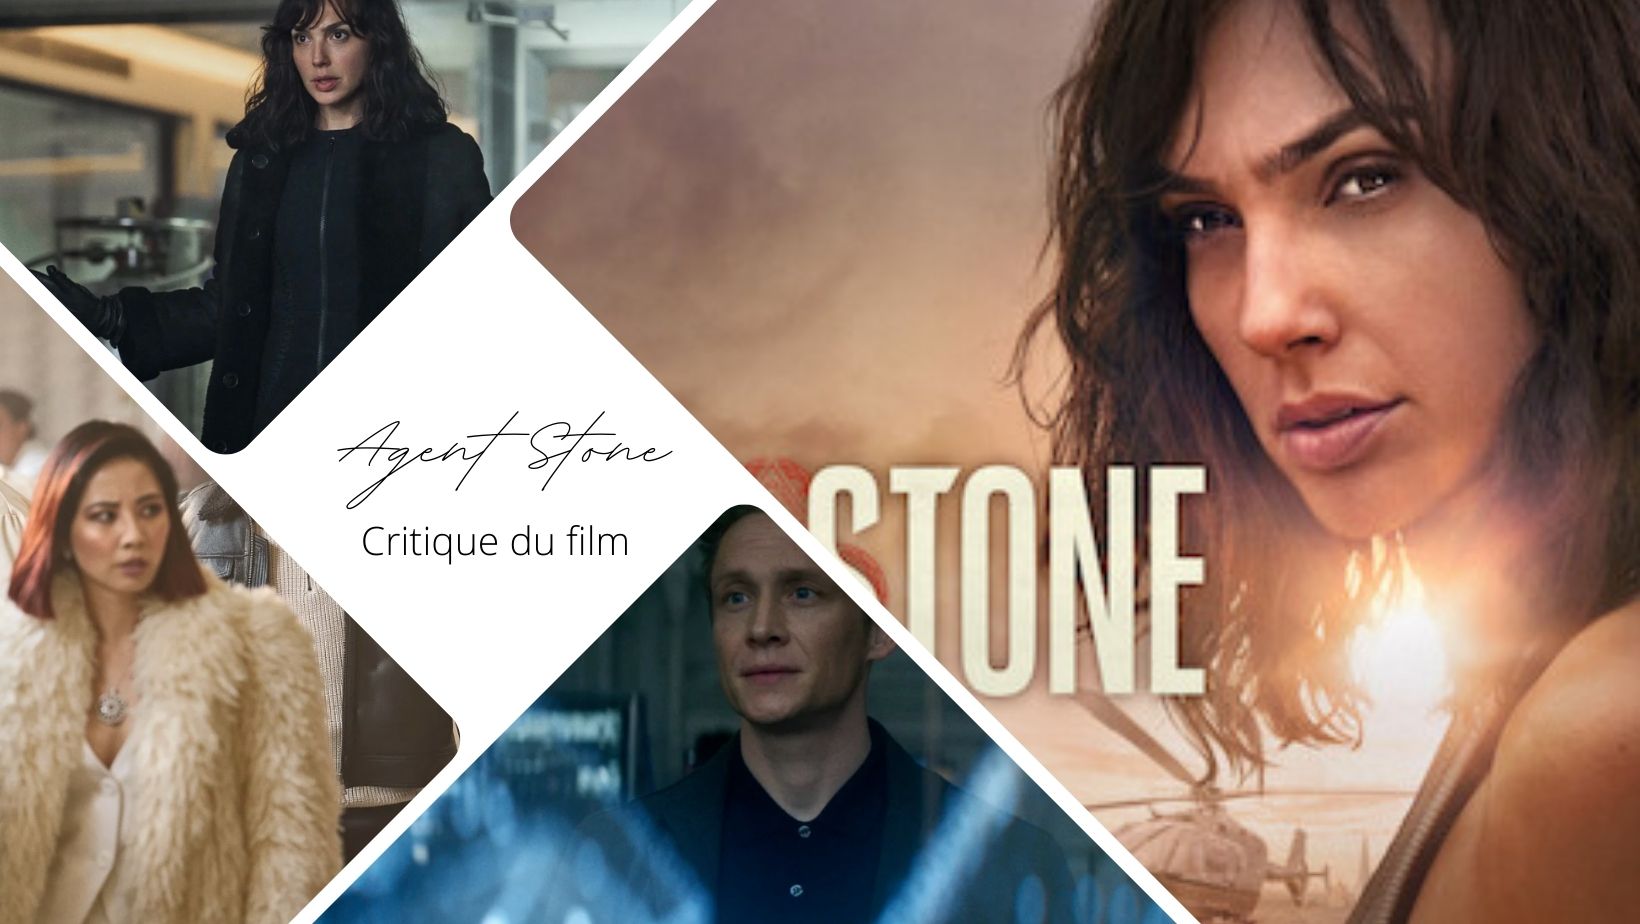 Agent Stone – Critique du film